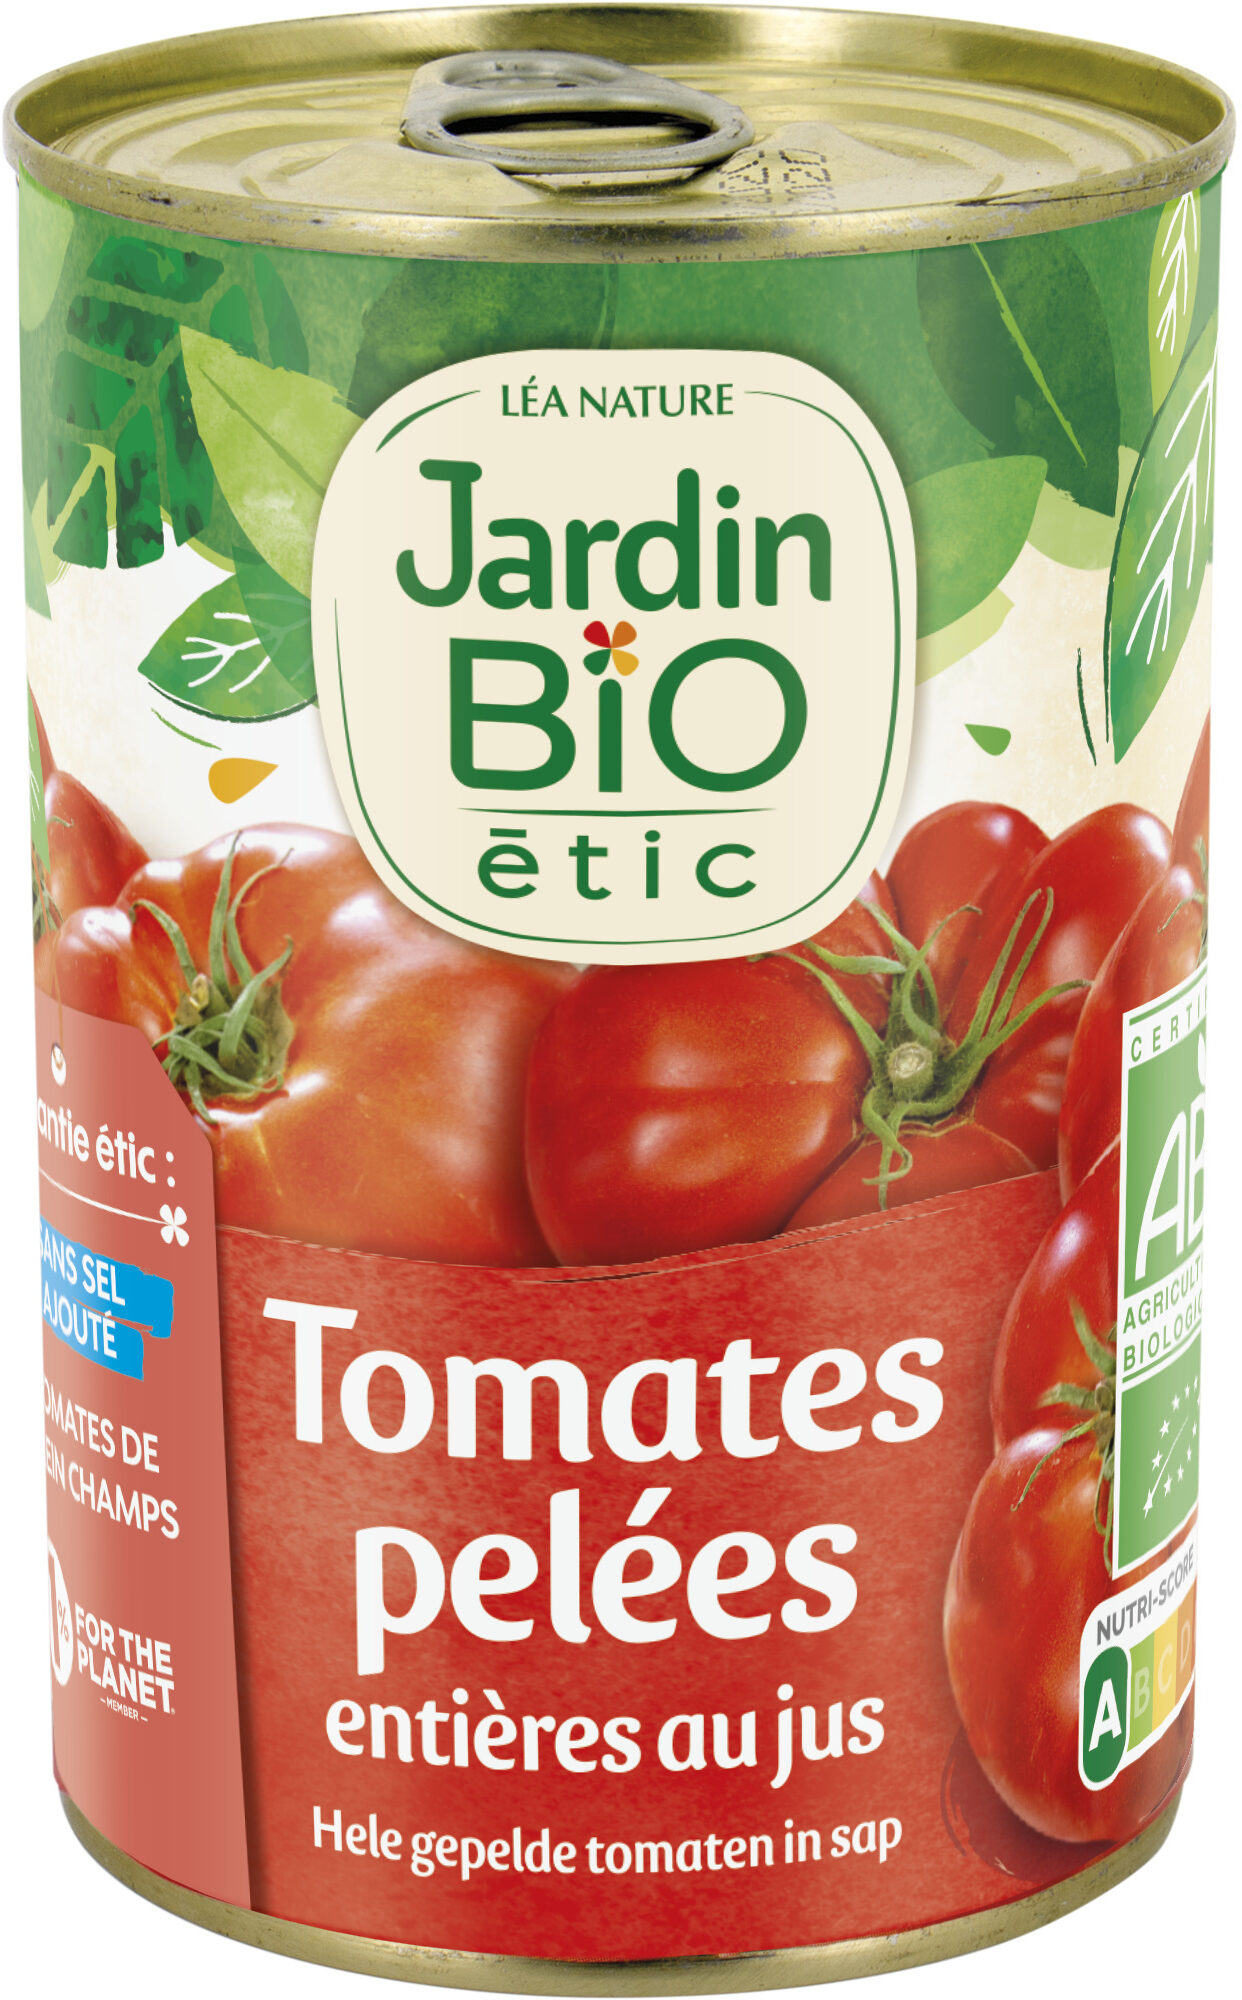 Tomates pelées entières au jus - Product - fr